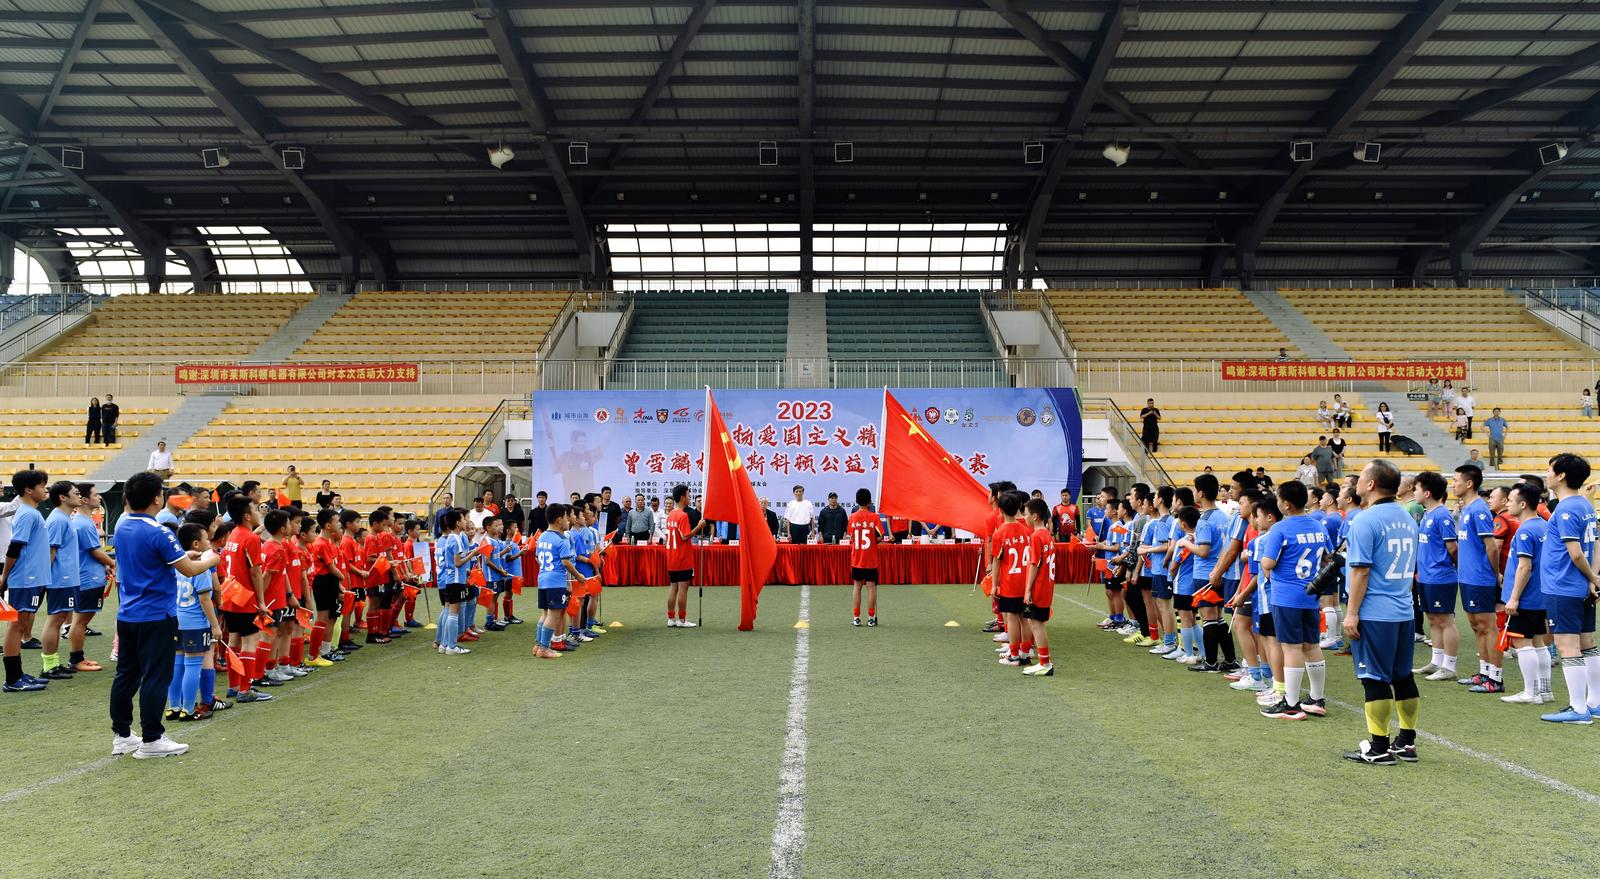 “曾雪麟杯”莱斯科顿公益足球赛在深圳举行